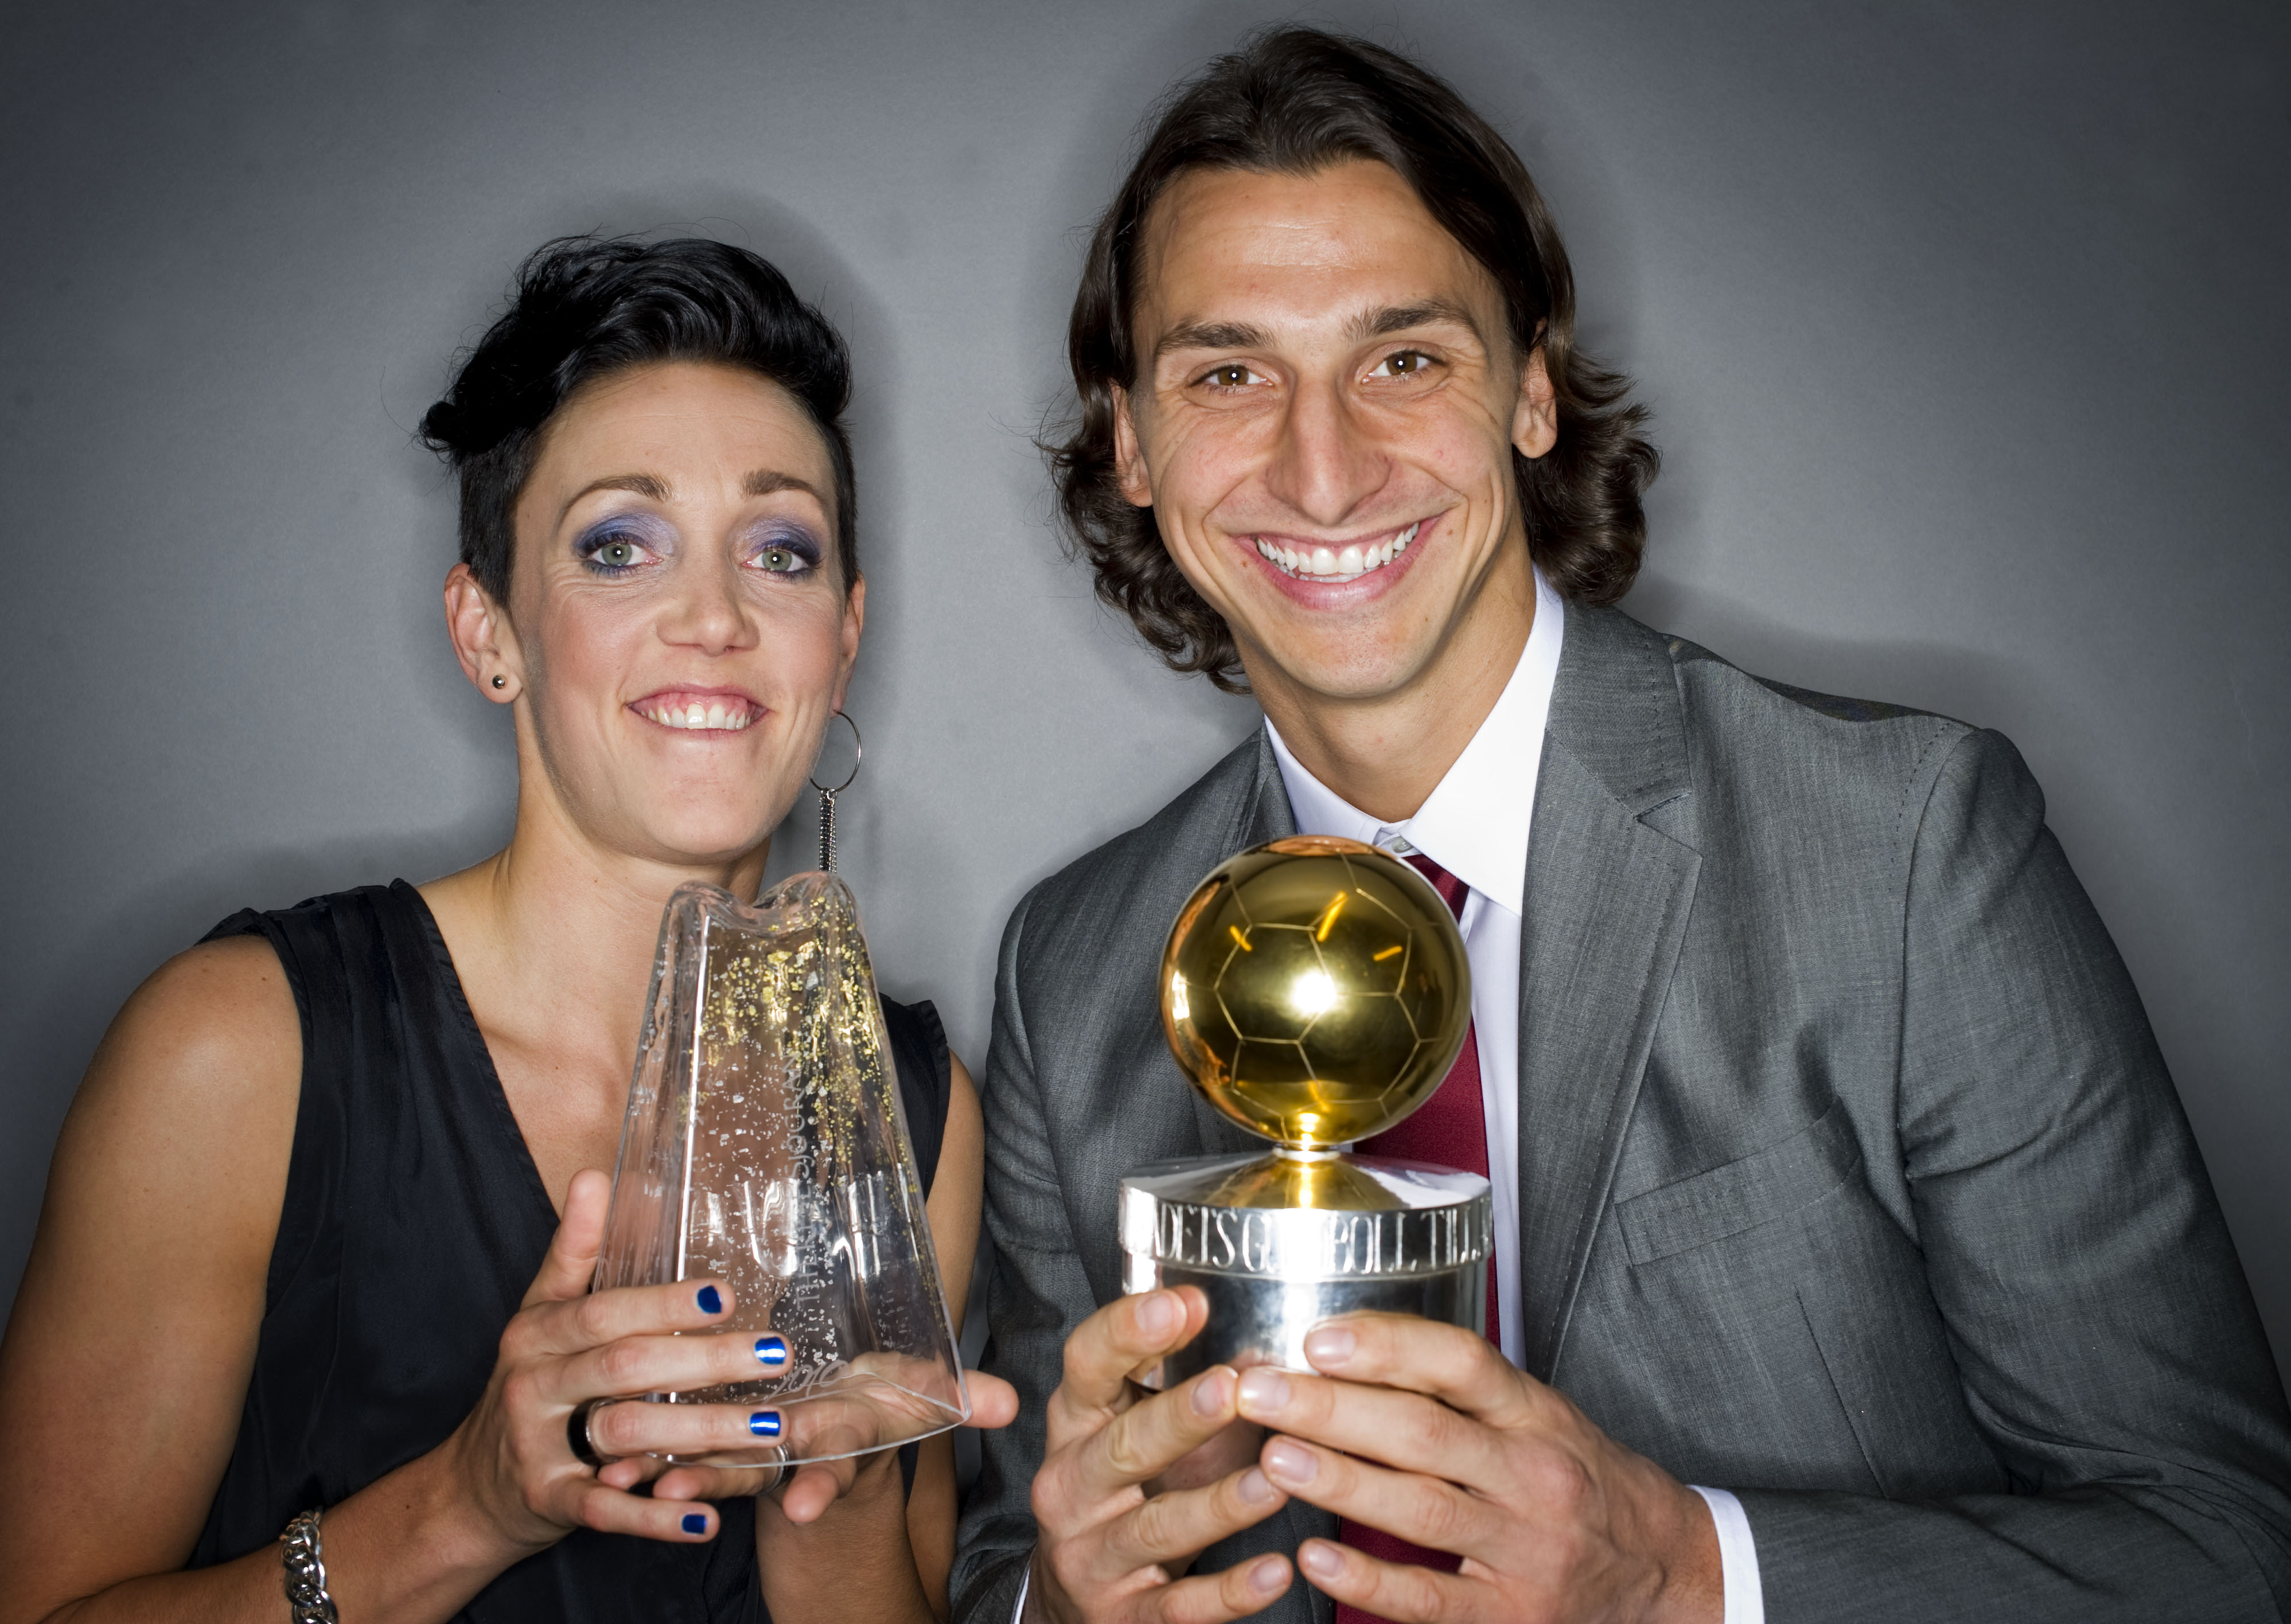 För fyra år sedan fick både Sjögran och Ibrahimovic pris som årets bästa spelare. 